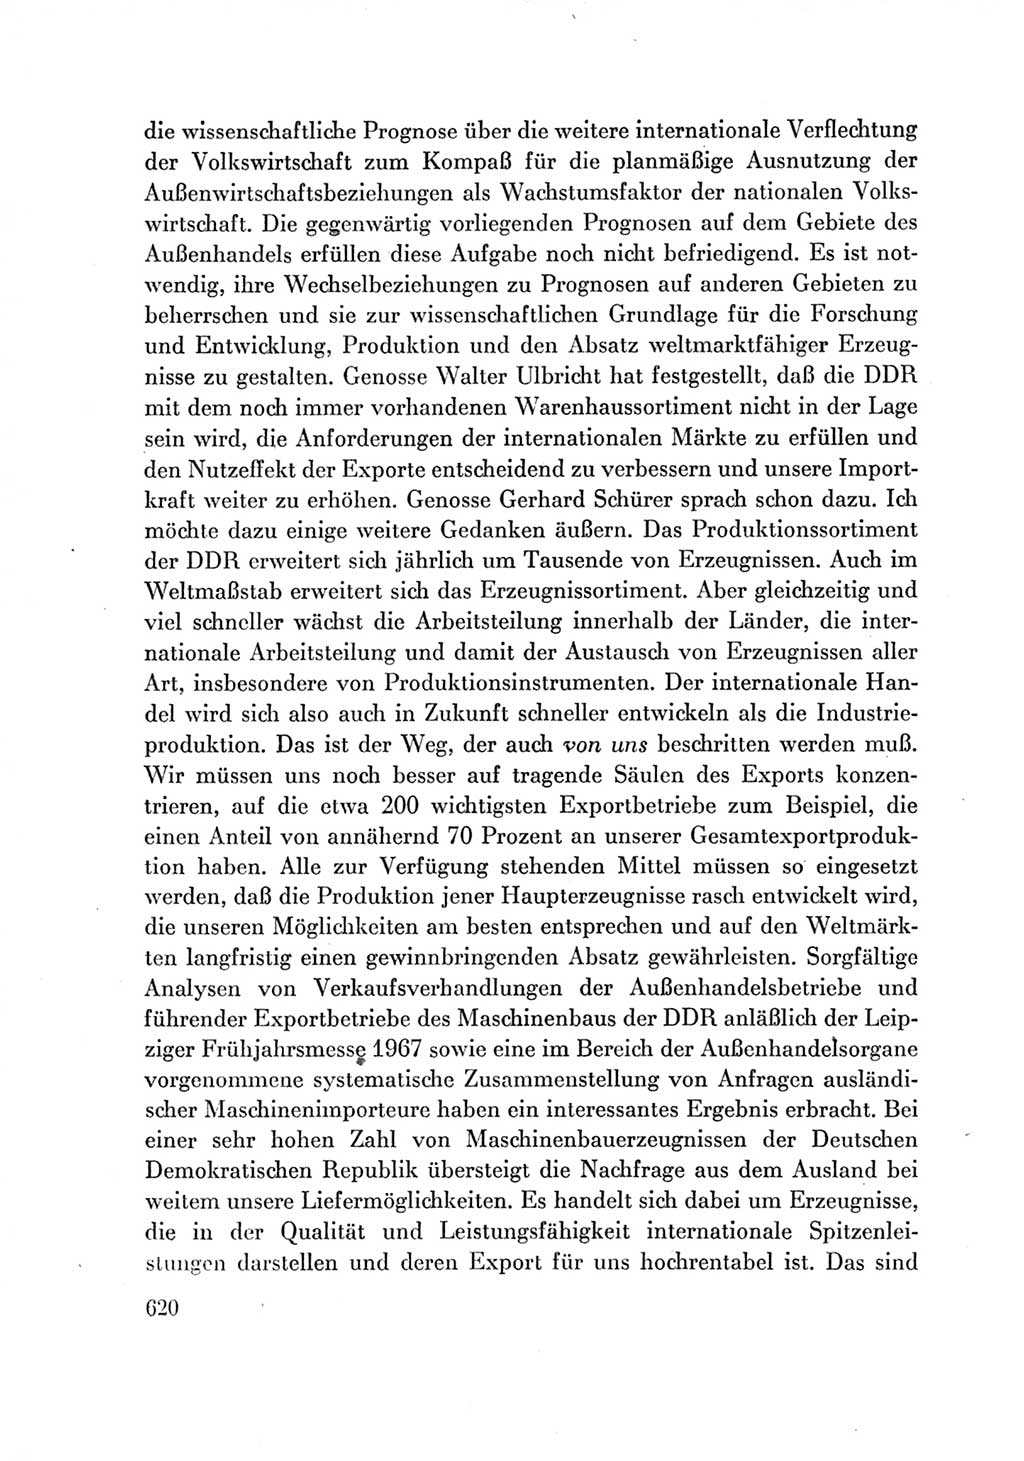 Protokoll der Verhandlungen des Ⅶ. Parteitages der Sozialistischen Einheitspartei Deutschlands (SED) [Deutsche Demokratische Republik (DDR)] 1967, Band Ⅲ, Seite 620 (Prot. Verh. Ⅶ. PT SED DDR 1967, Bd. Ⅲ, S. 620)